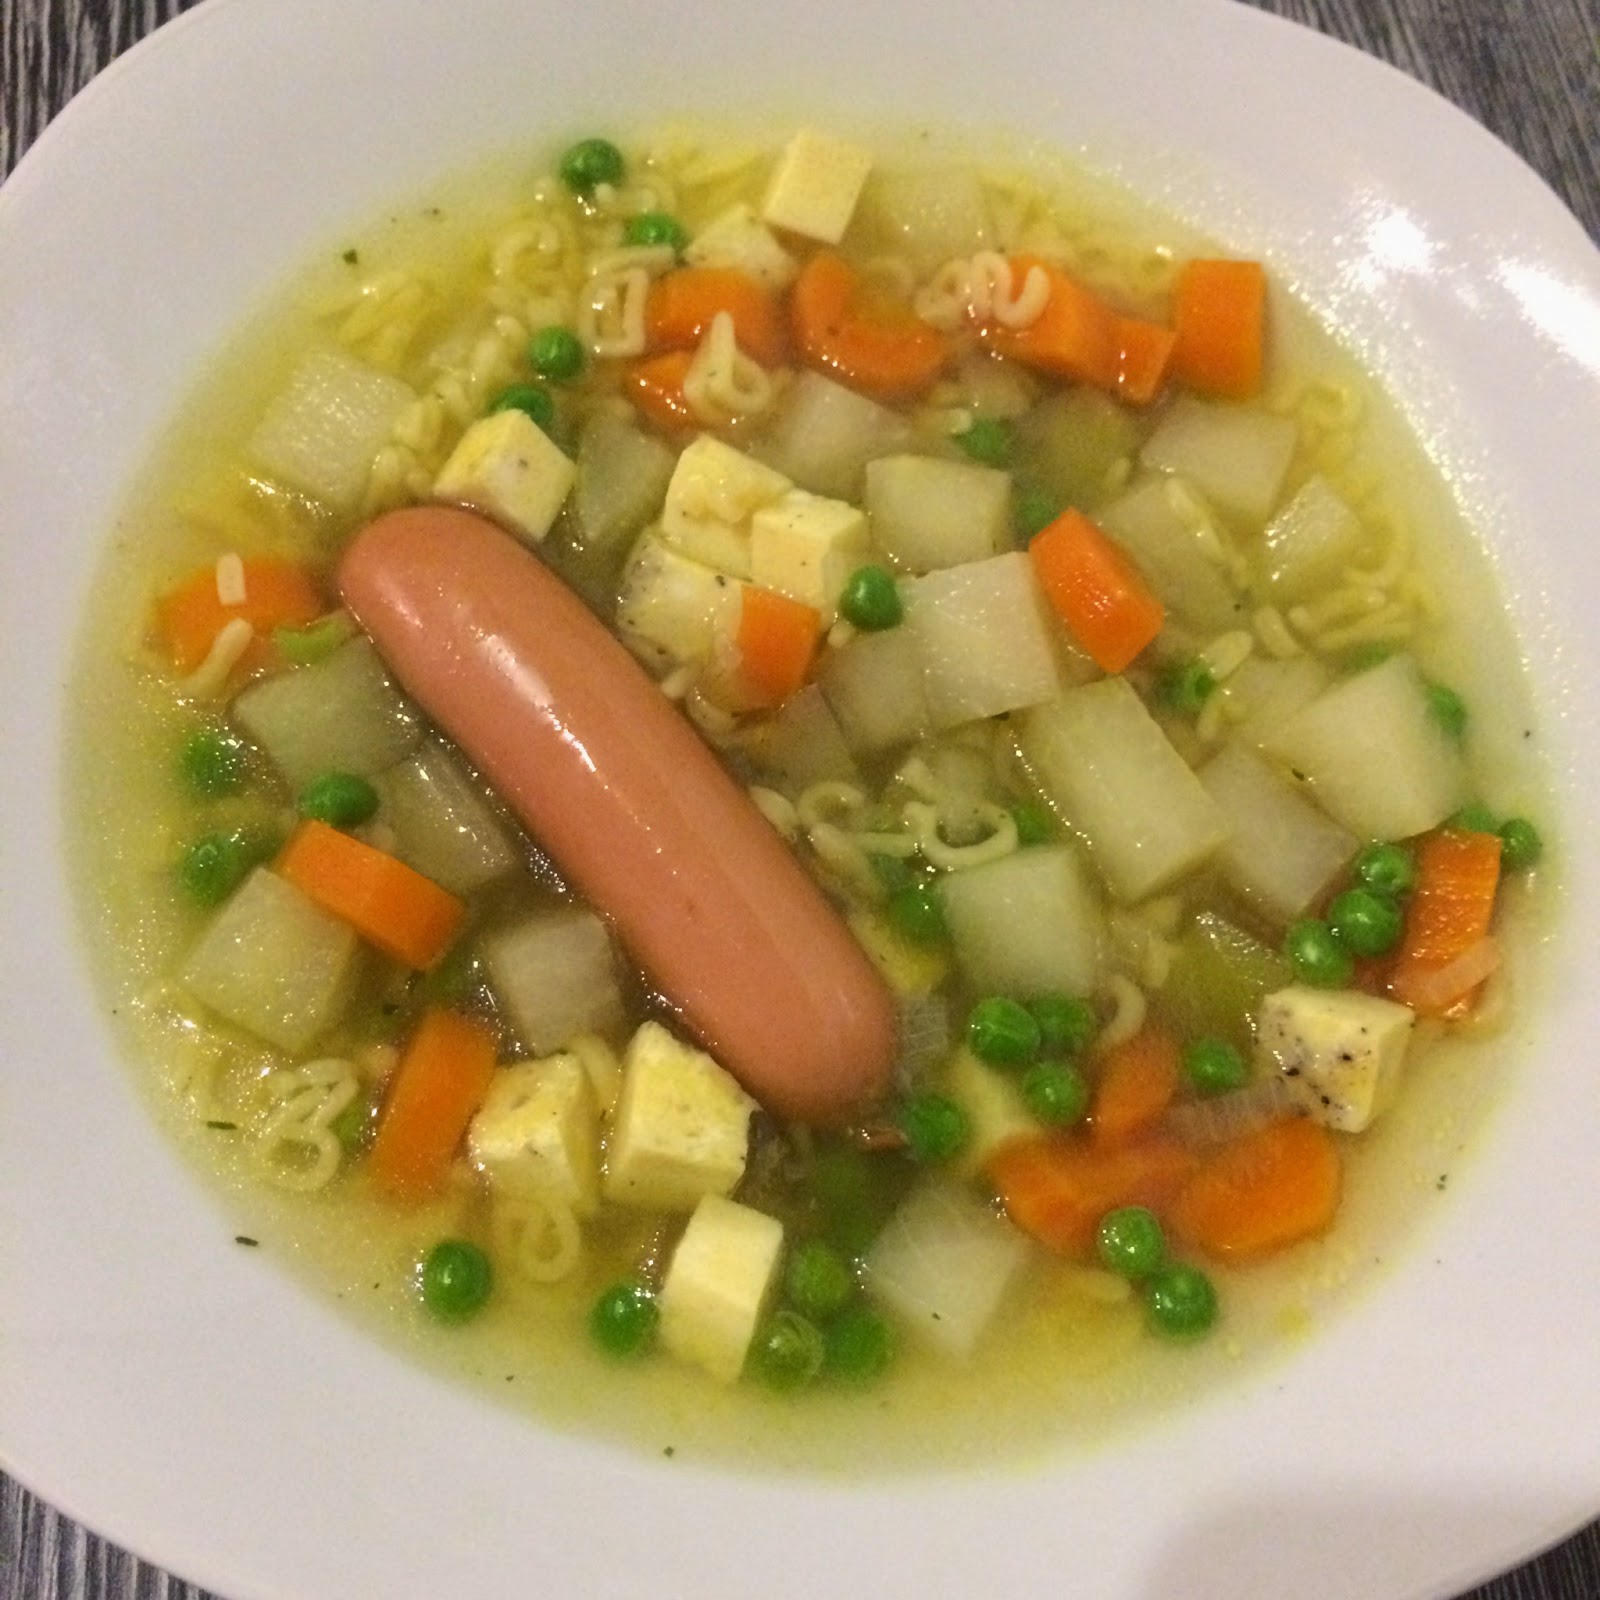 Handarbeit, Kochen und Co.: Nudel-Gemüsesuppe mit Würstchen